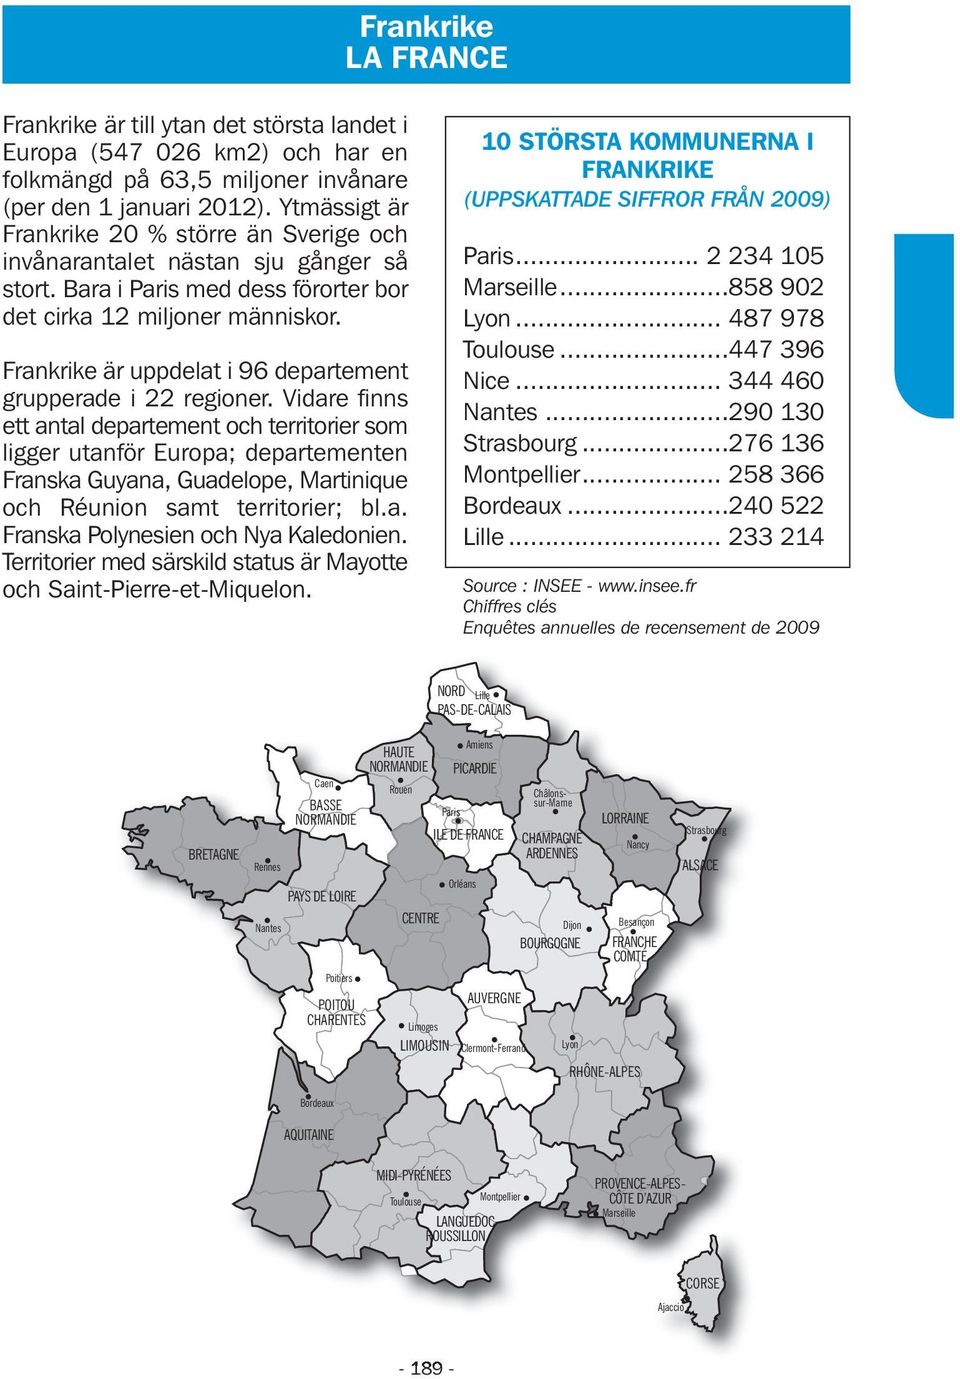 Frankrike är uppdelat i 96 departement grupperade i 22 regioner.